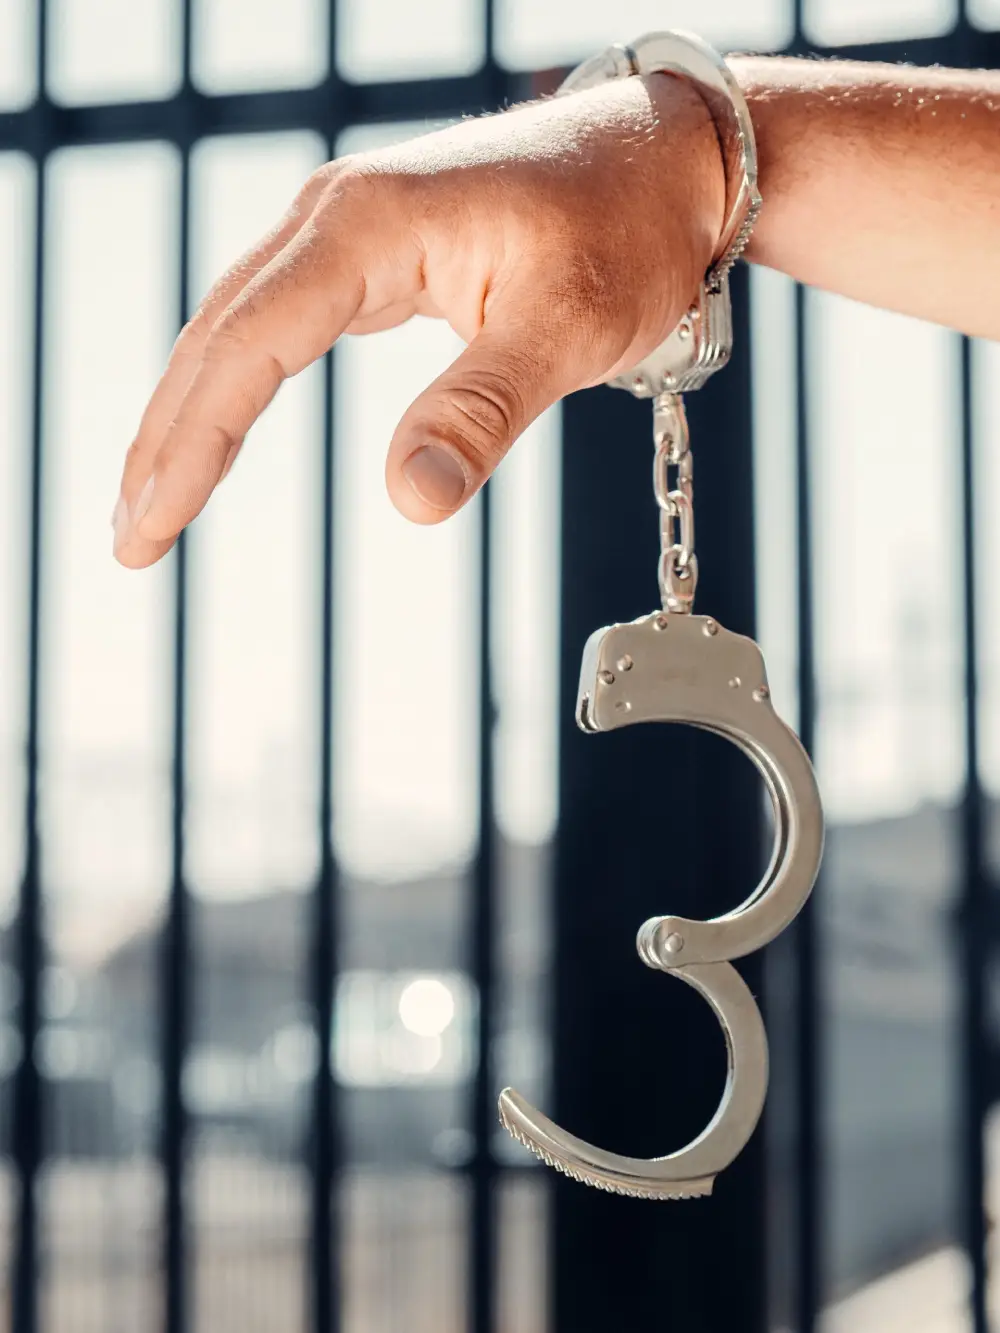 Hand in handcuffs - Get Bail Bond Services